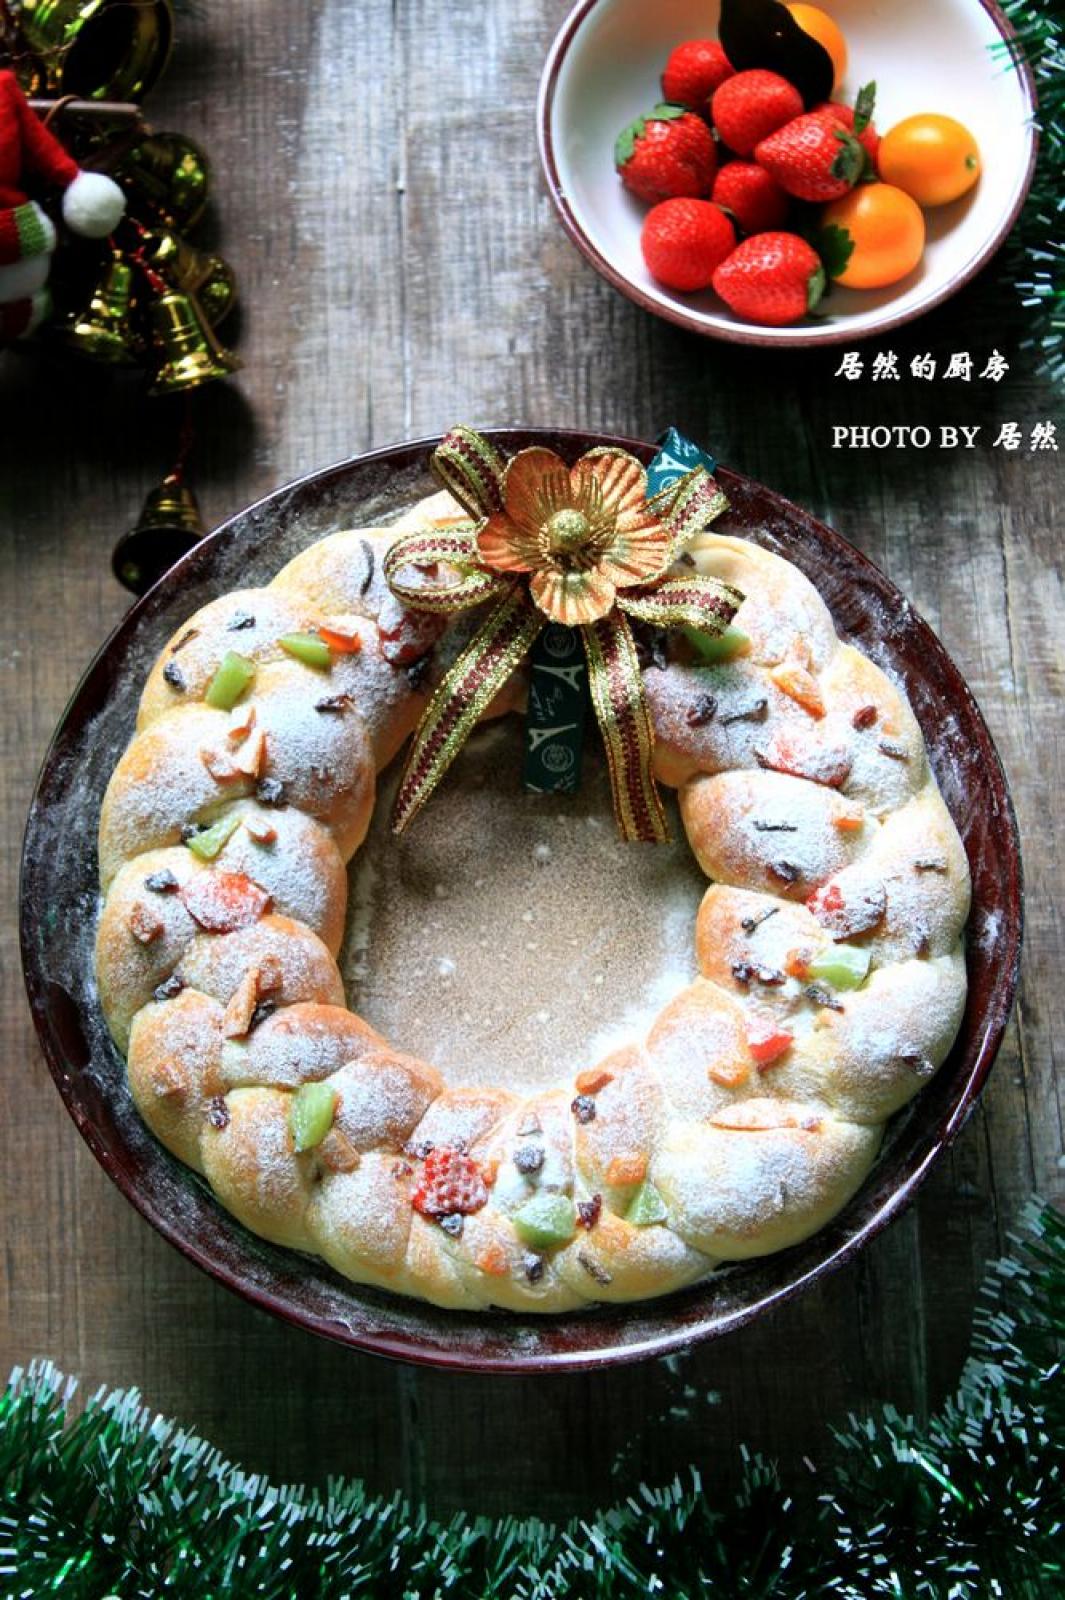 切的圣诞节面包 库存照片. 图片 包括有 甜甜, 款待, 圣诞节, 季节性, 片式, 食物, 切片, 自创 - 34875836